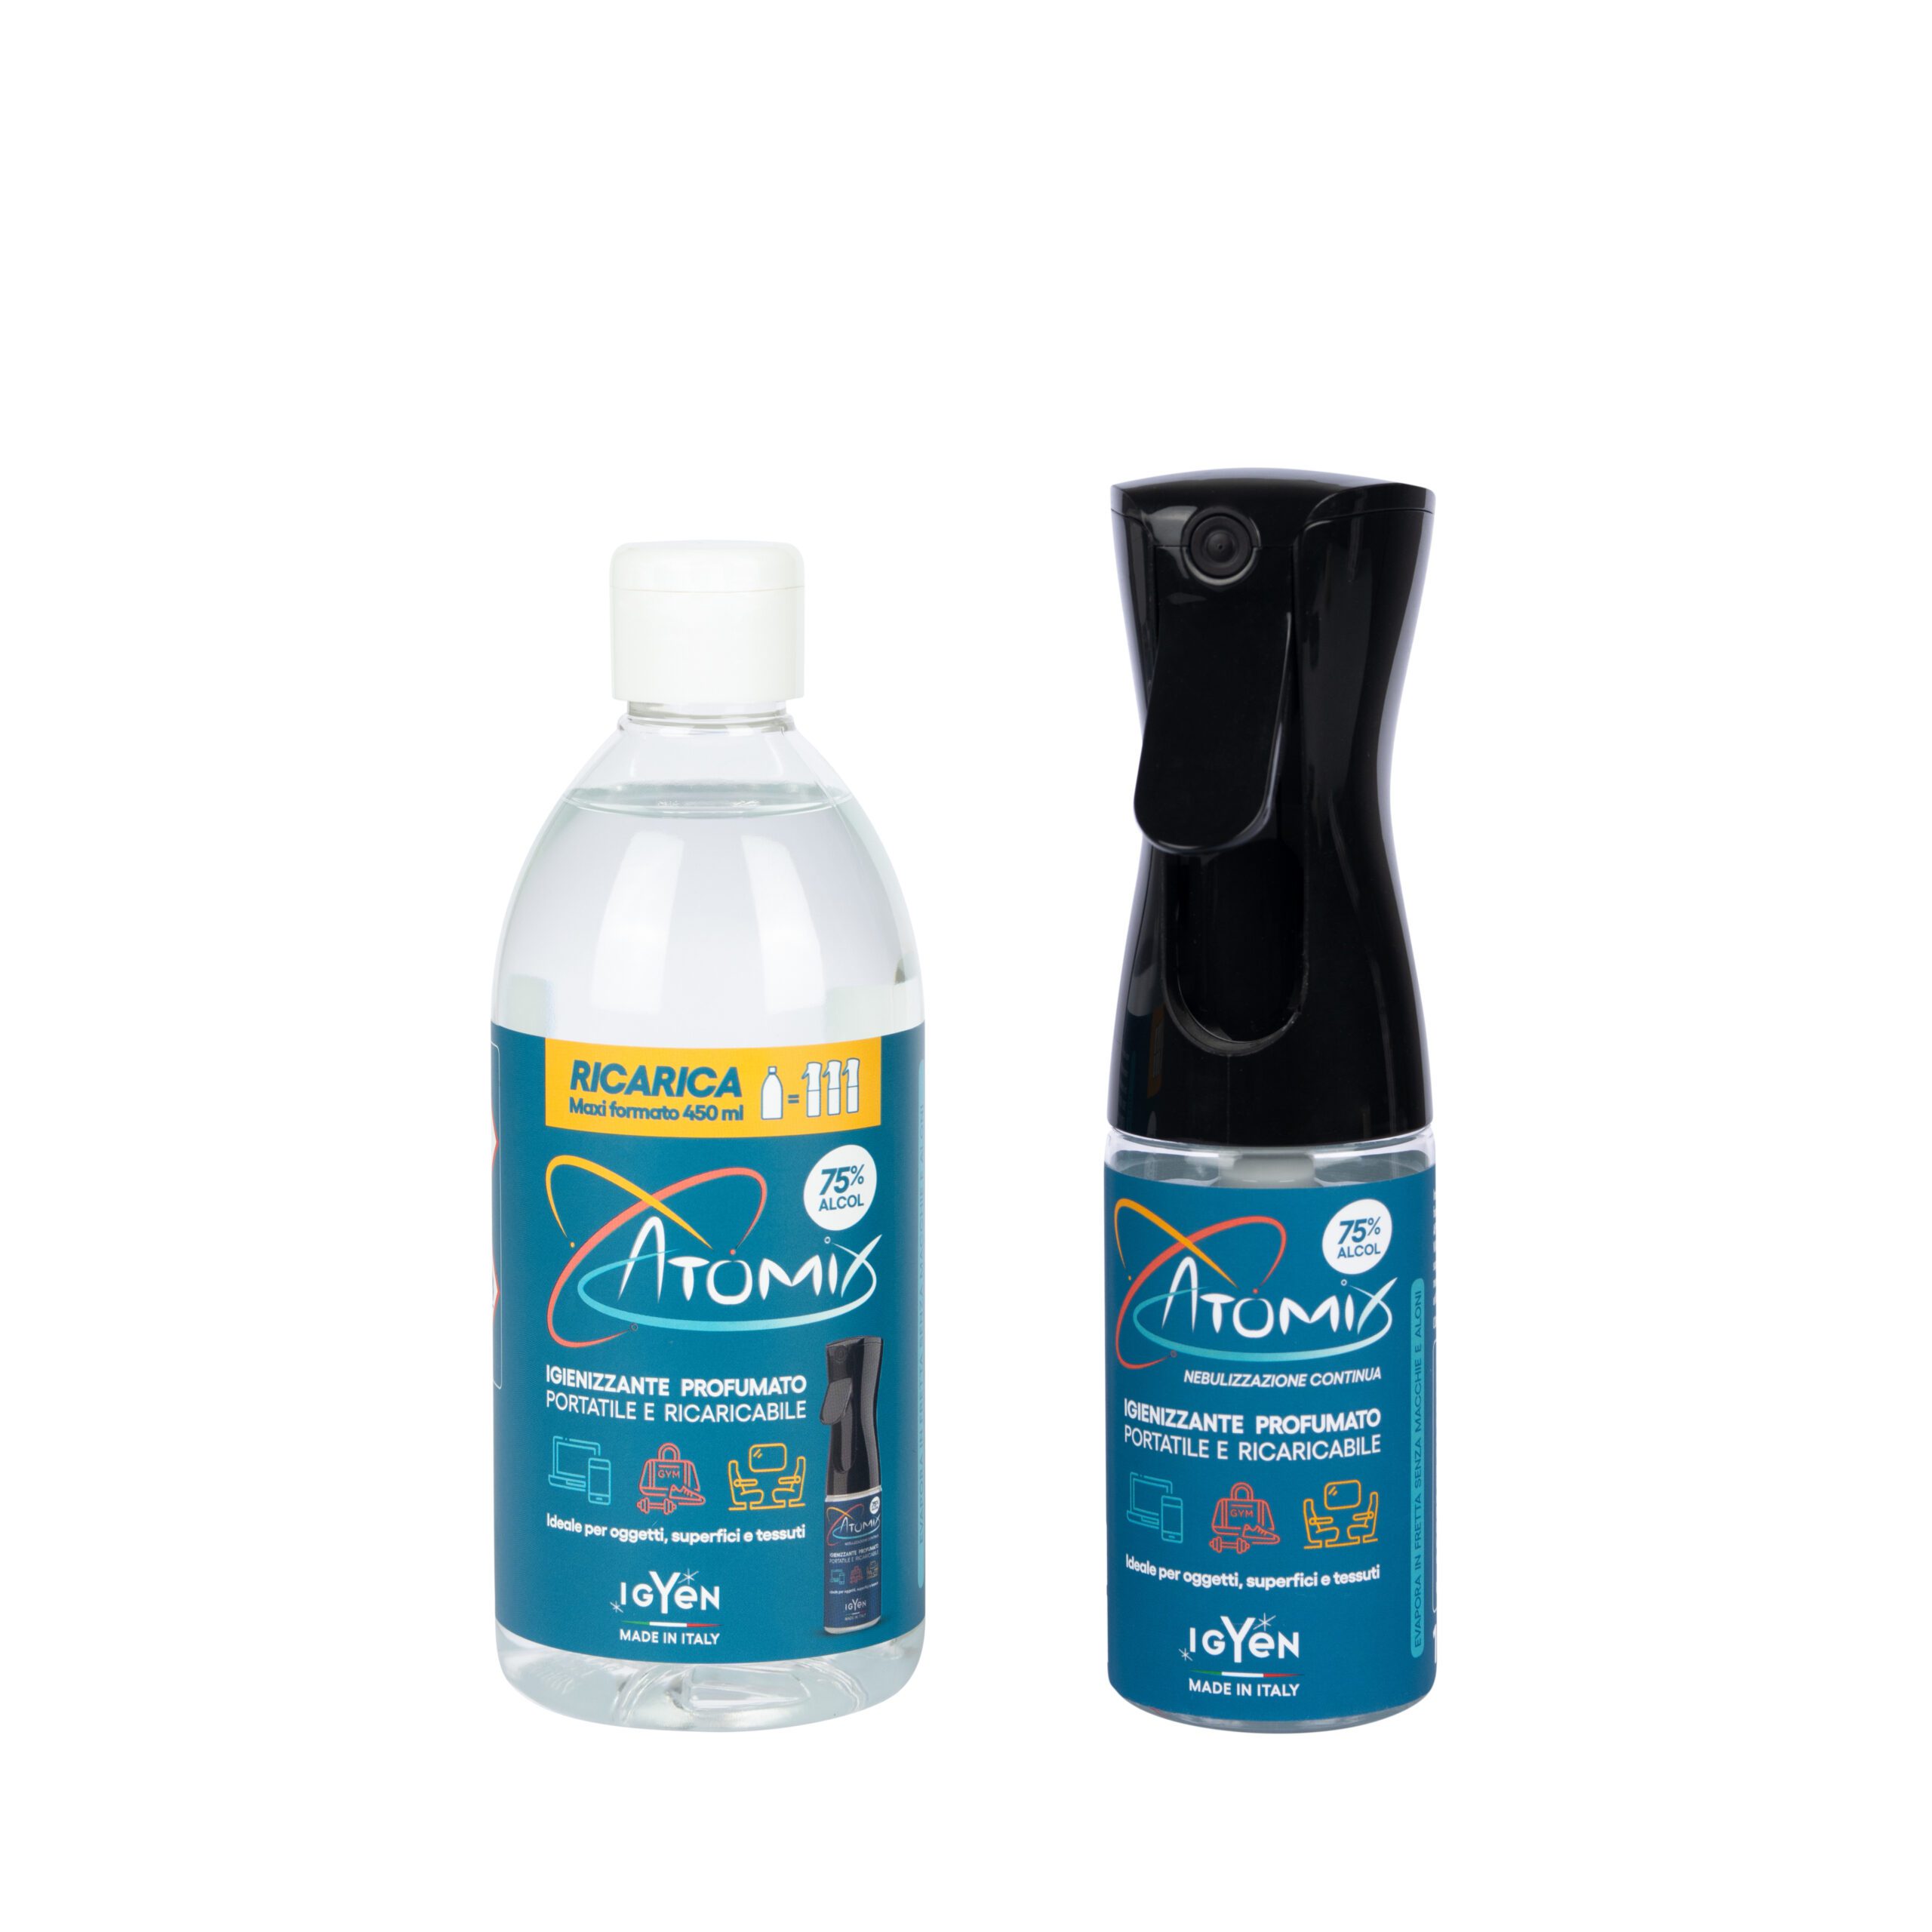 ATOMIX PMC Duo - Disinfettante Multiuso, Igiene per la Casa